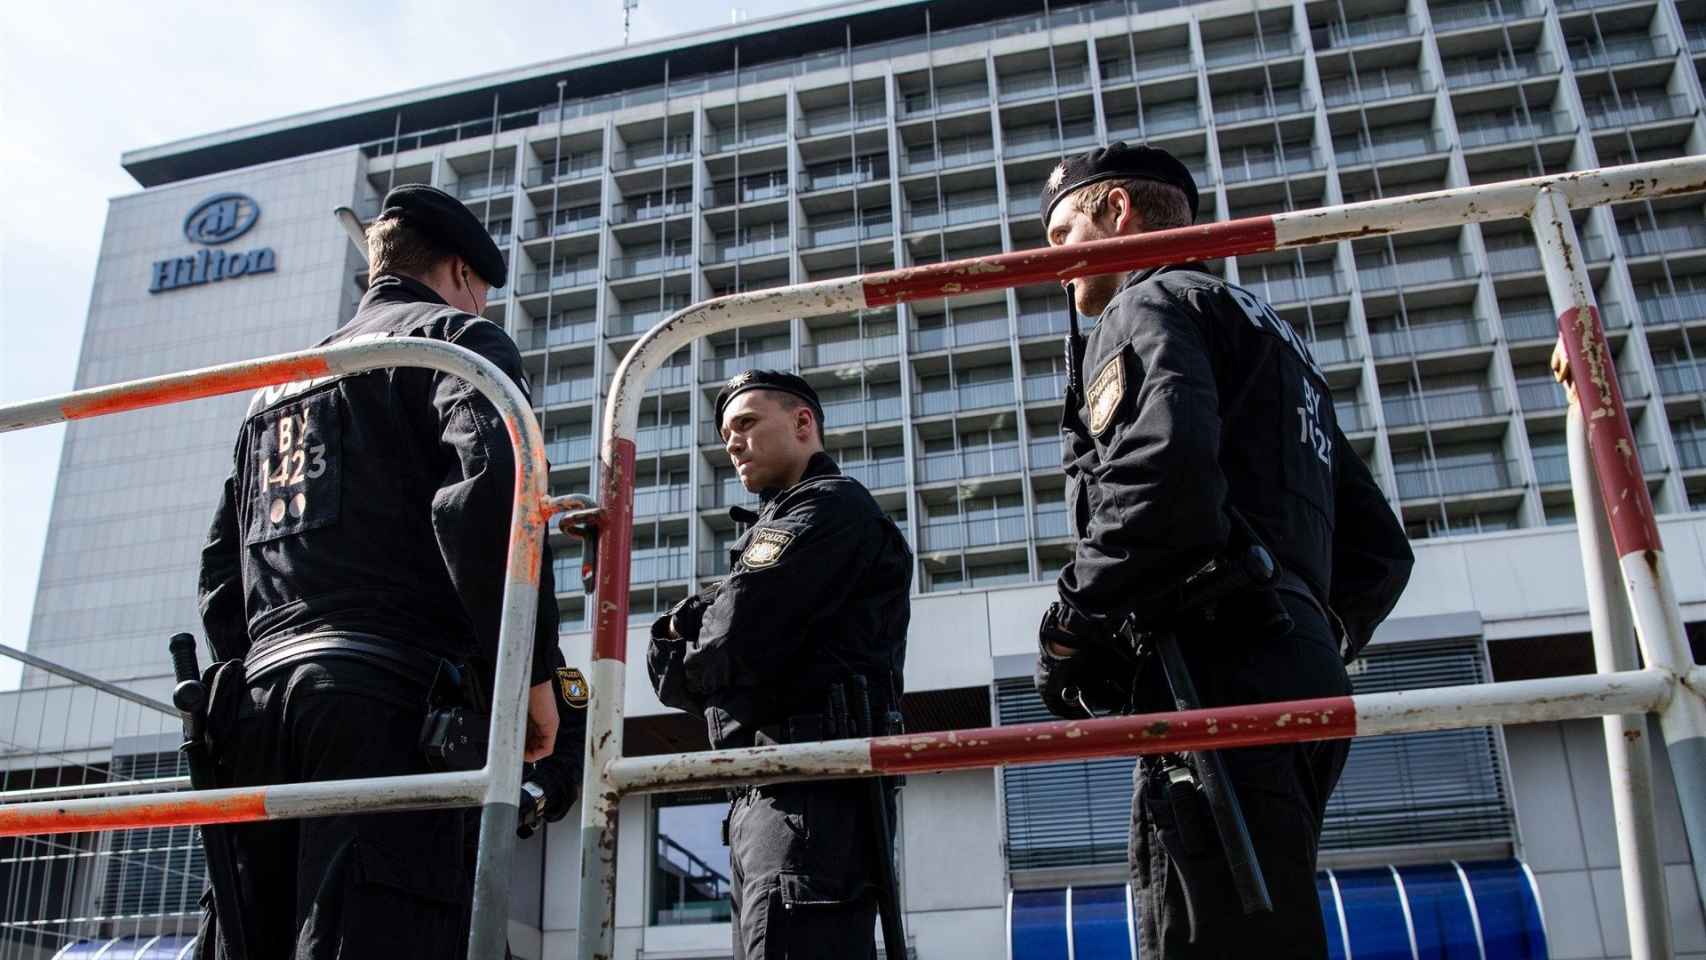 Policías alemanes frente a un hotel en la zona en la que la joven barcelonesa fue violada / EP